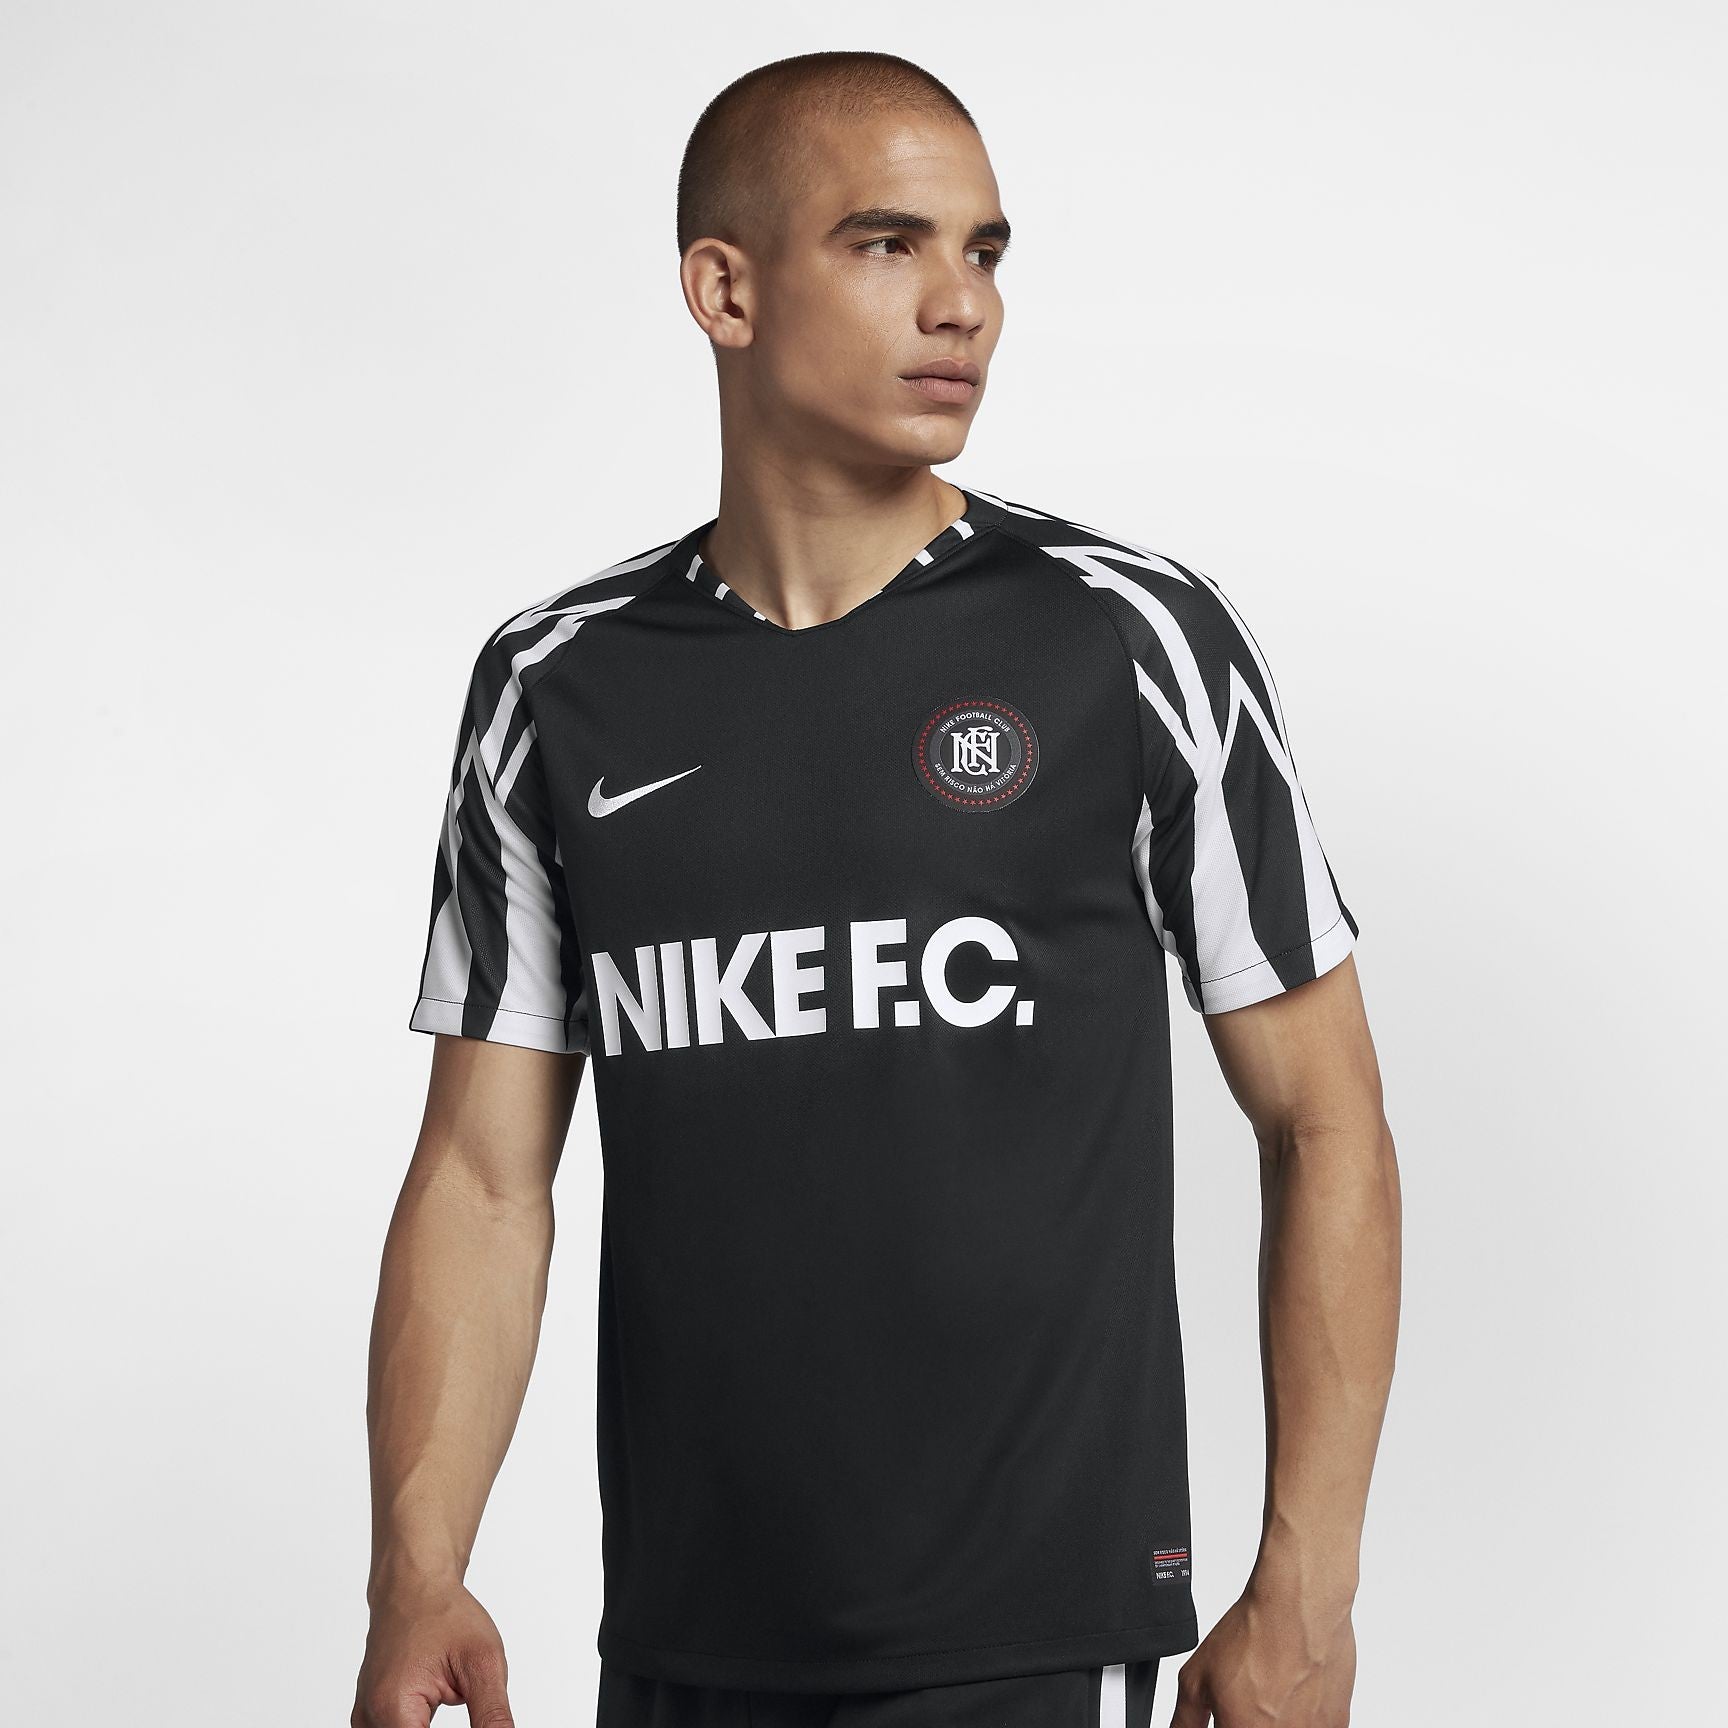 Dhr parallel Uittrekken Nike F.C. Home Soccer Jersey - Black/White/White